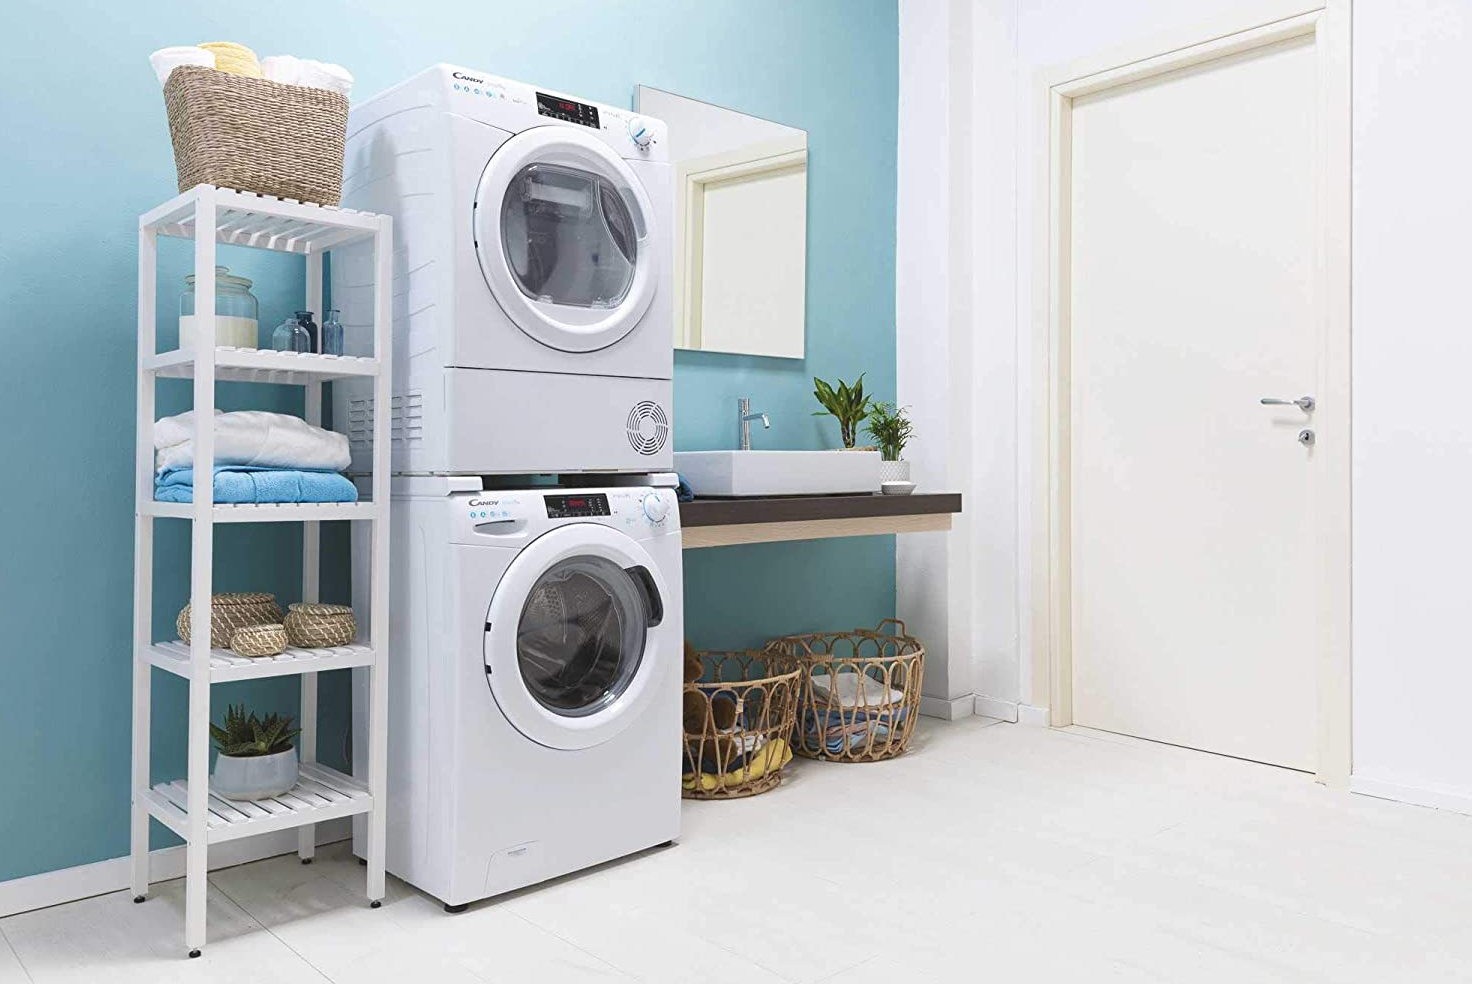 Oferta Amazon: lavadora secadora Candy 354 euros | Business Insider España